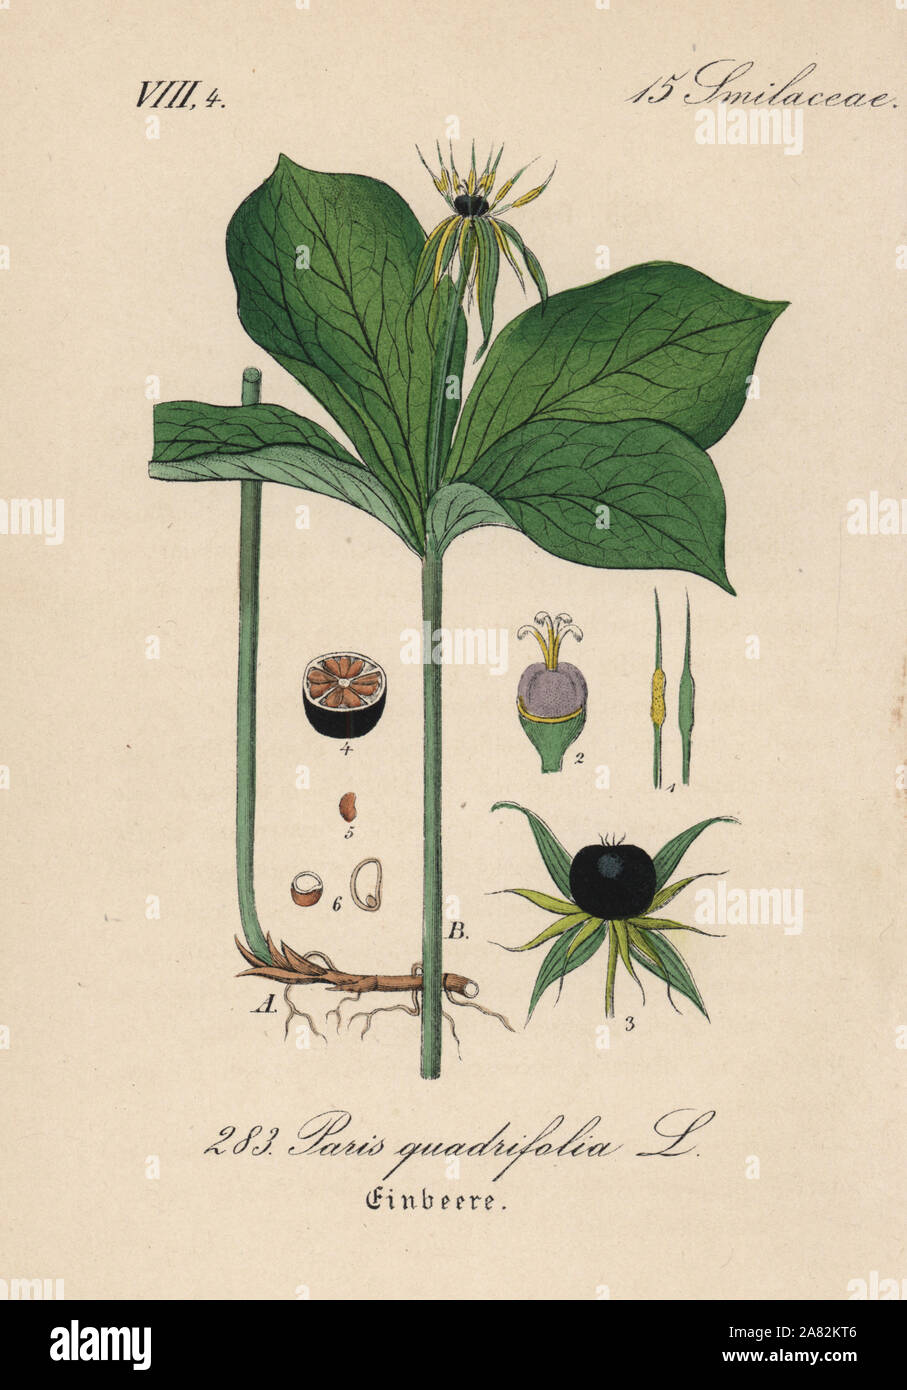 Kraut Paris, Paris quadrifolia. Papierkörbe Lithographie von Diederich von Schlechtendal der Deutschen Flora (Flora von Deutschland), Jena, 1871. Stockfoto